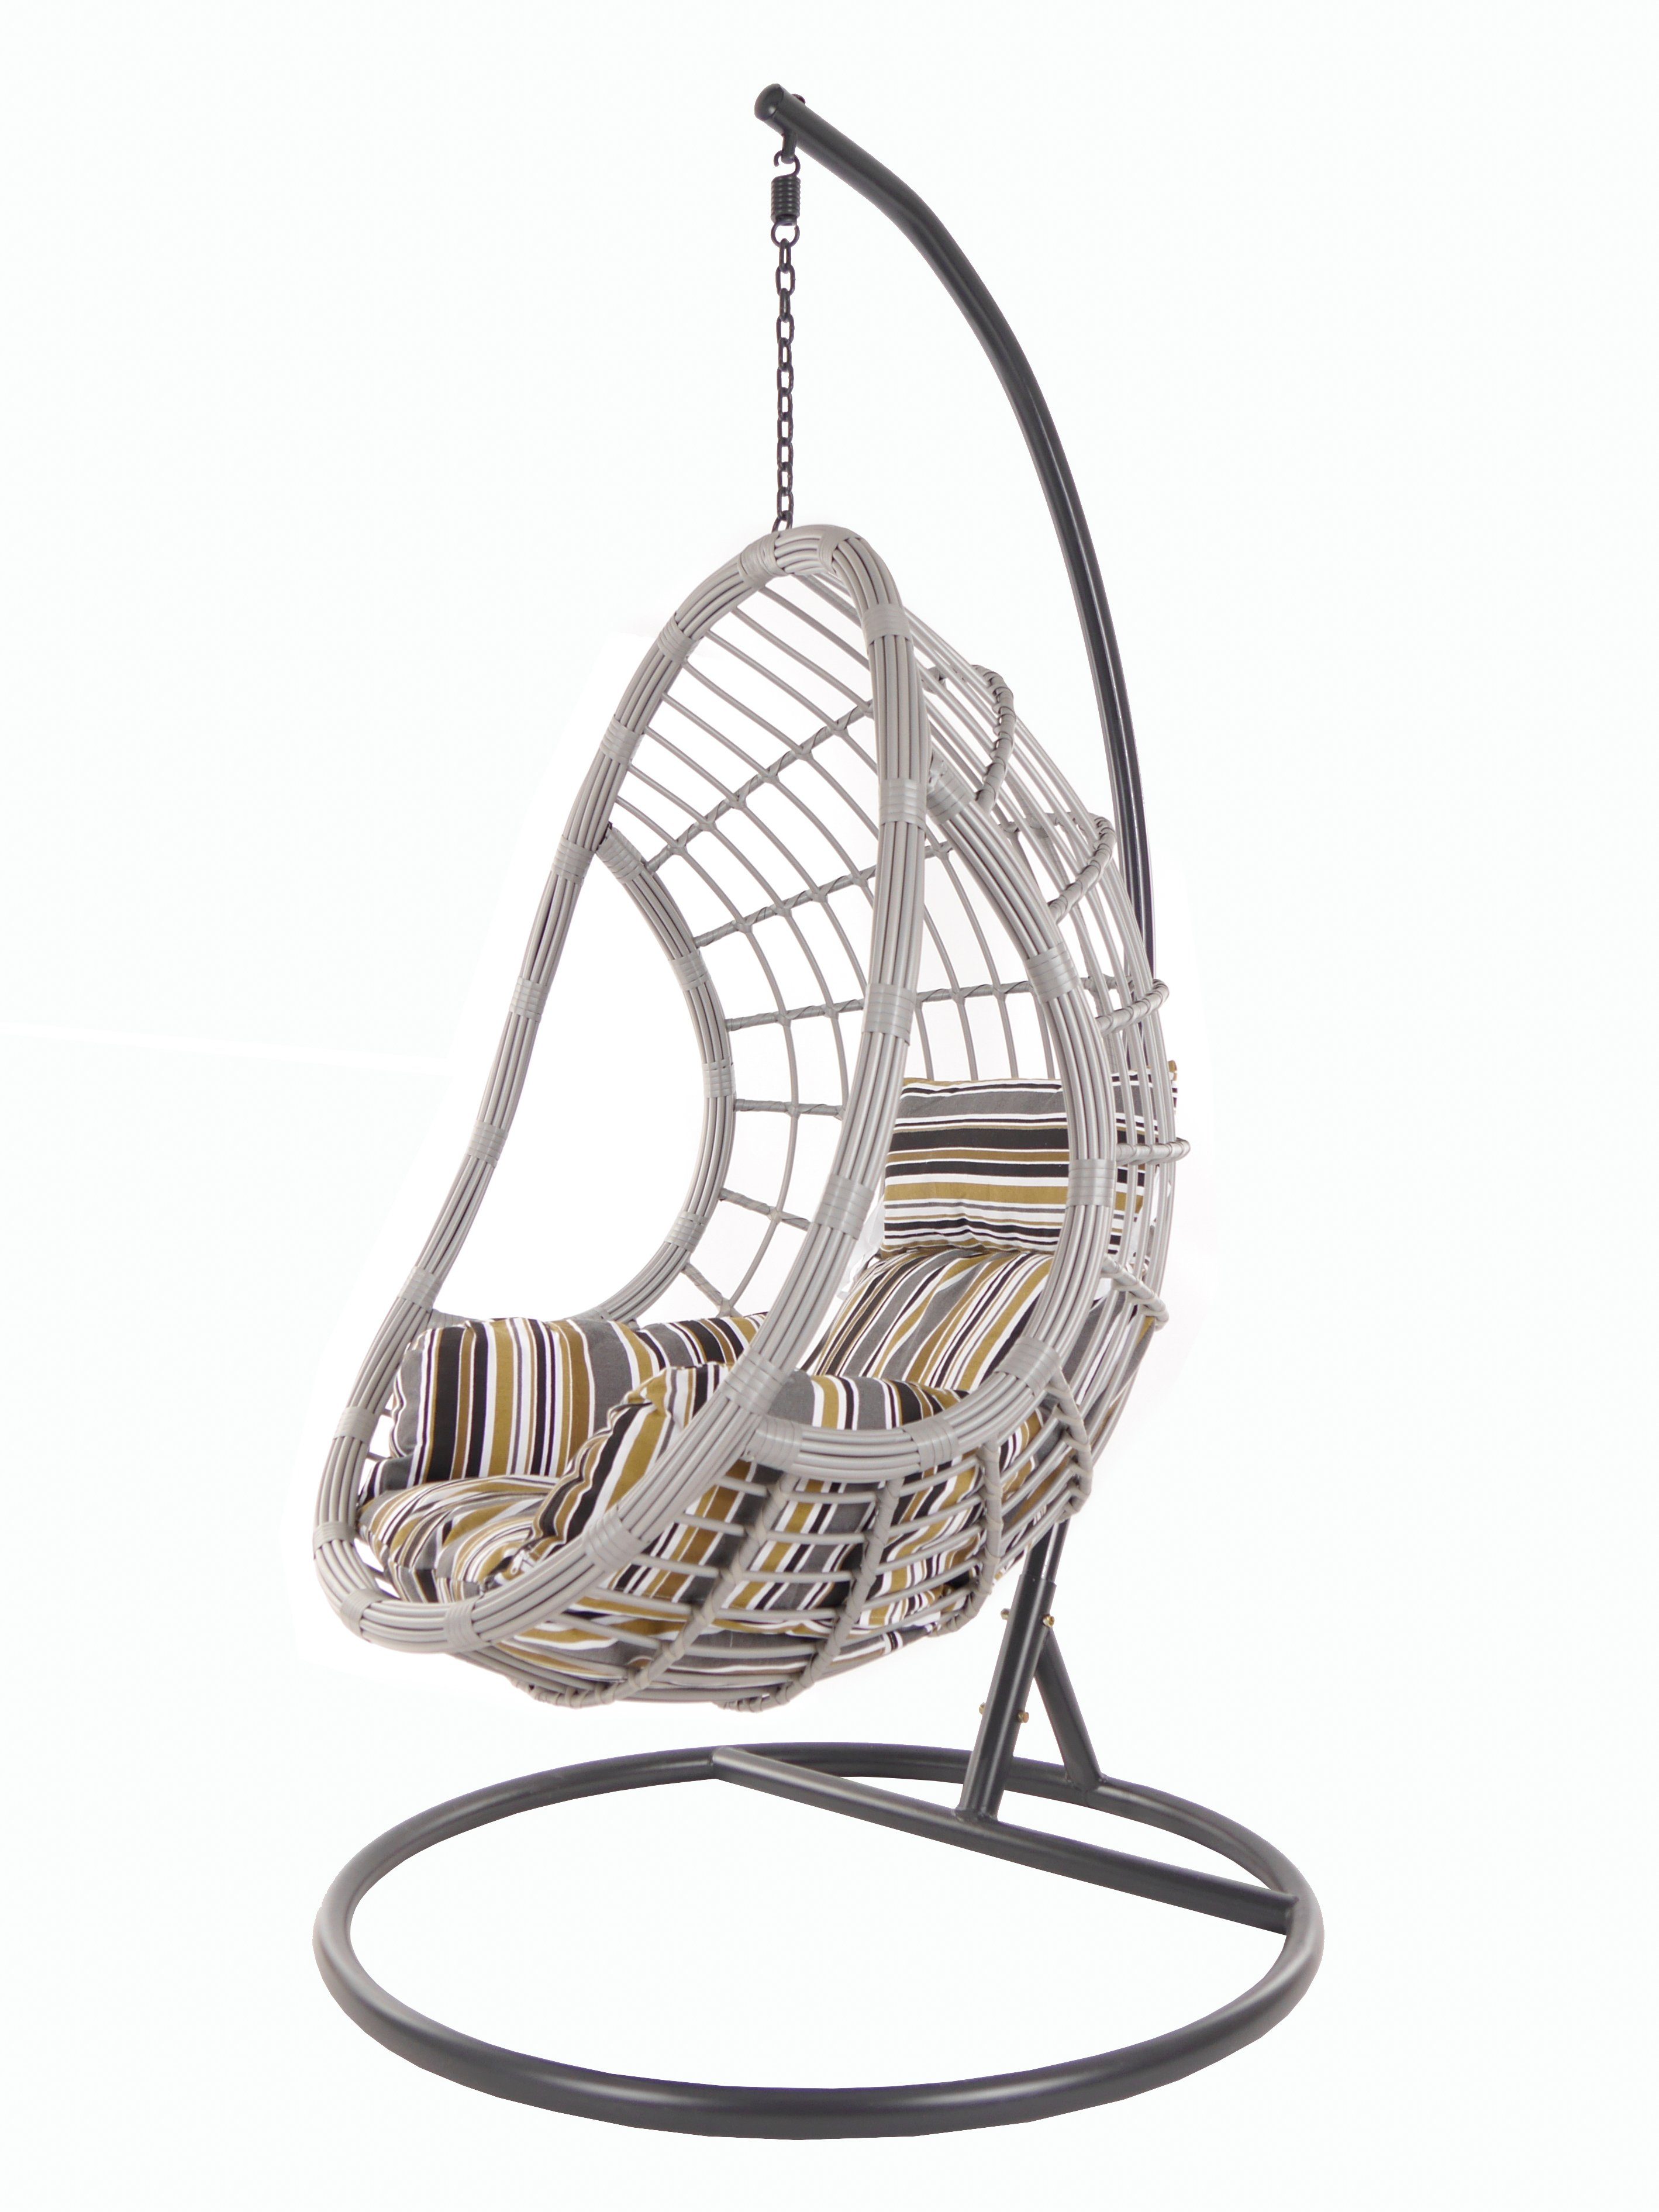 KIDEO Hängesessel PALMANOVA lightgrey, Swing Chair, Loungemöbel, Hängesessel mit Gestell und Kissen gestreift natur (7891 terra) | Hängesessel